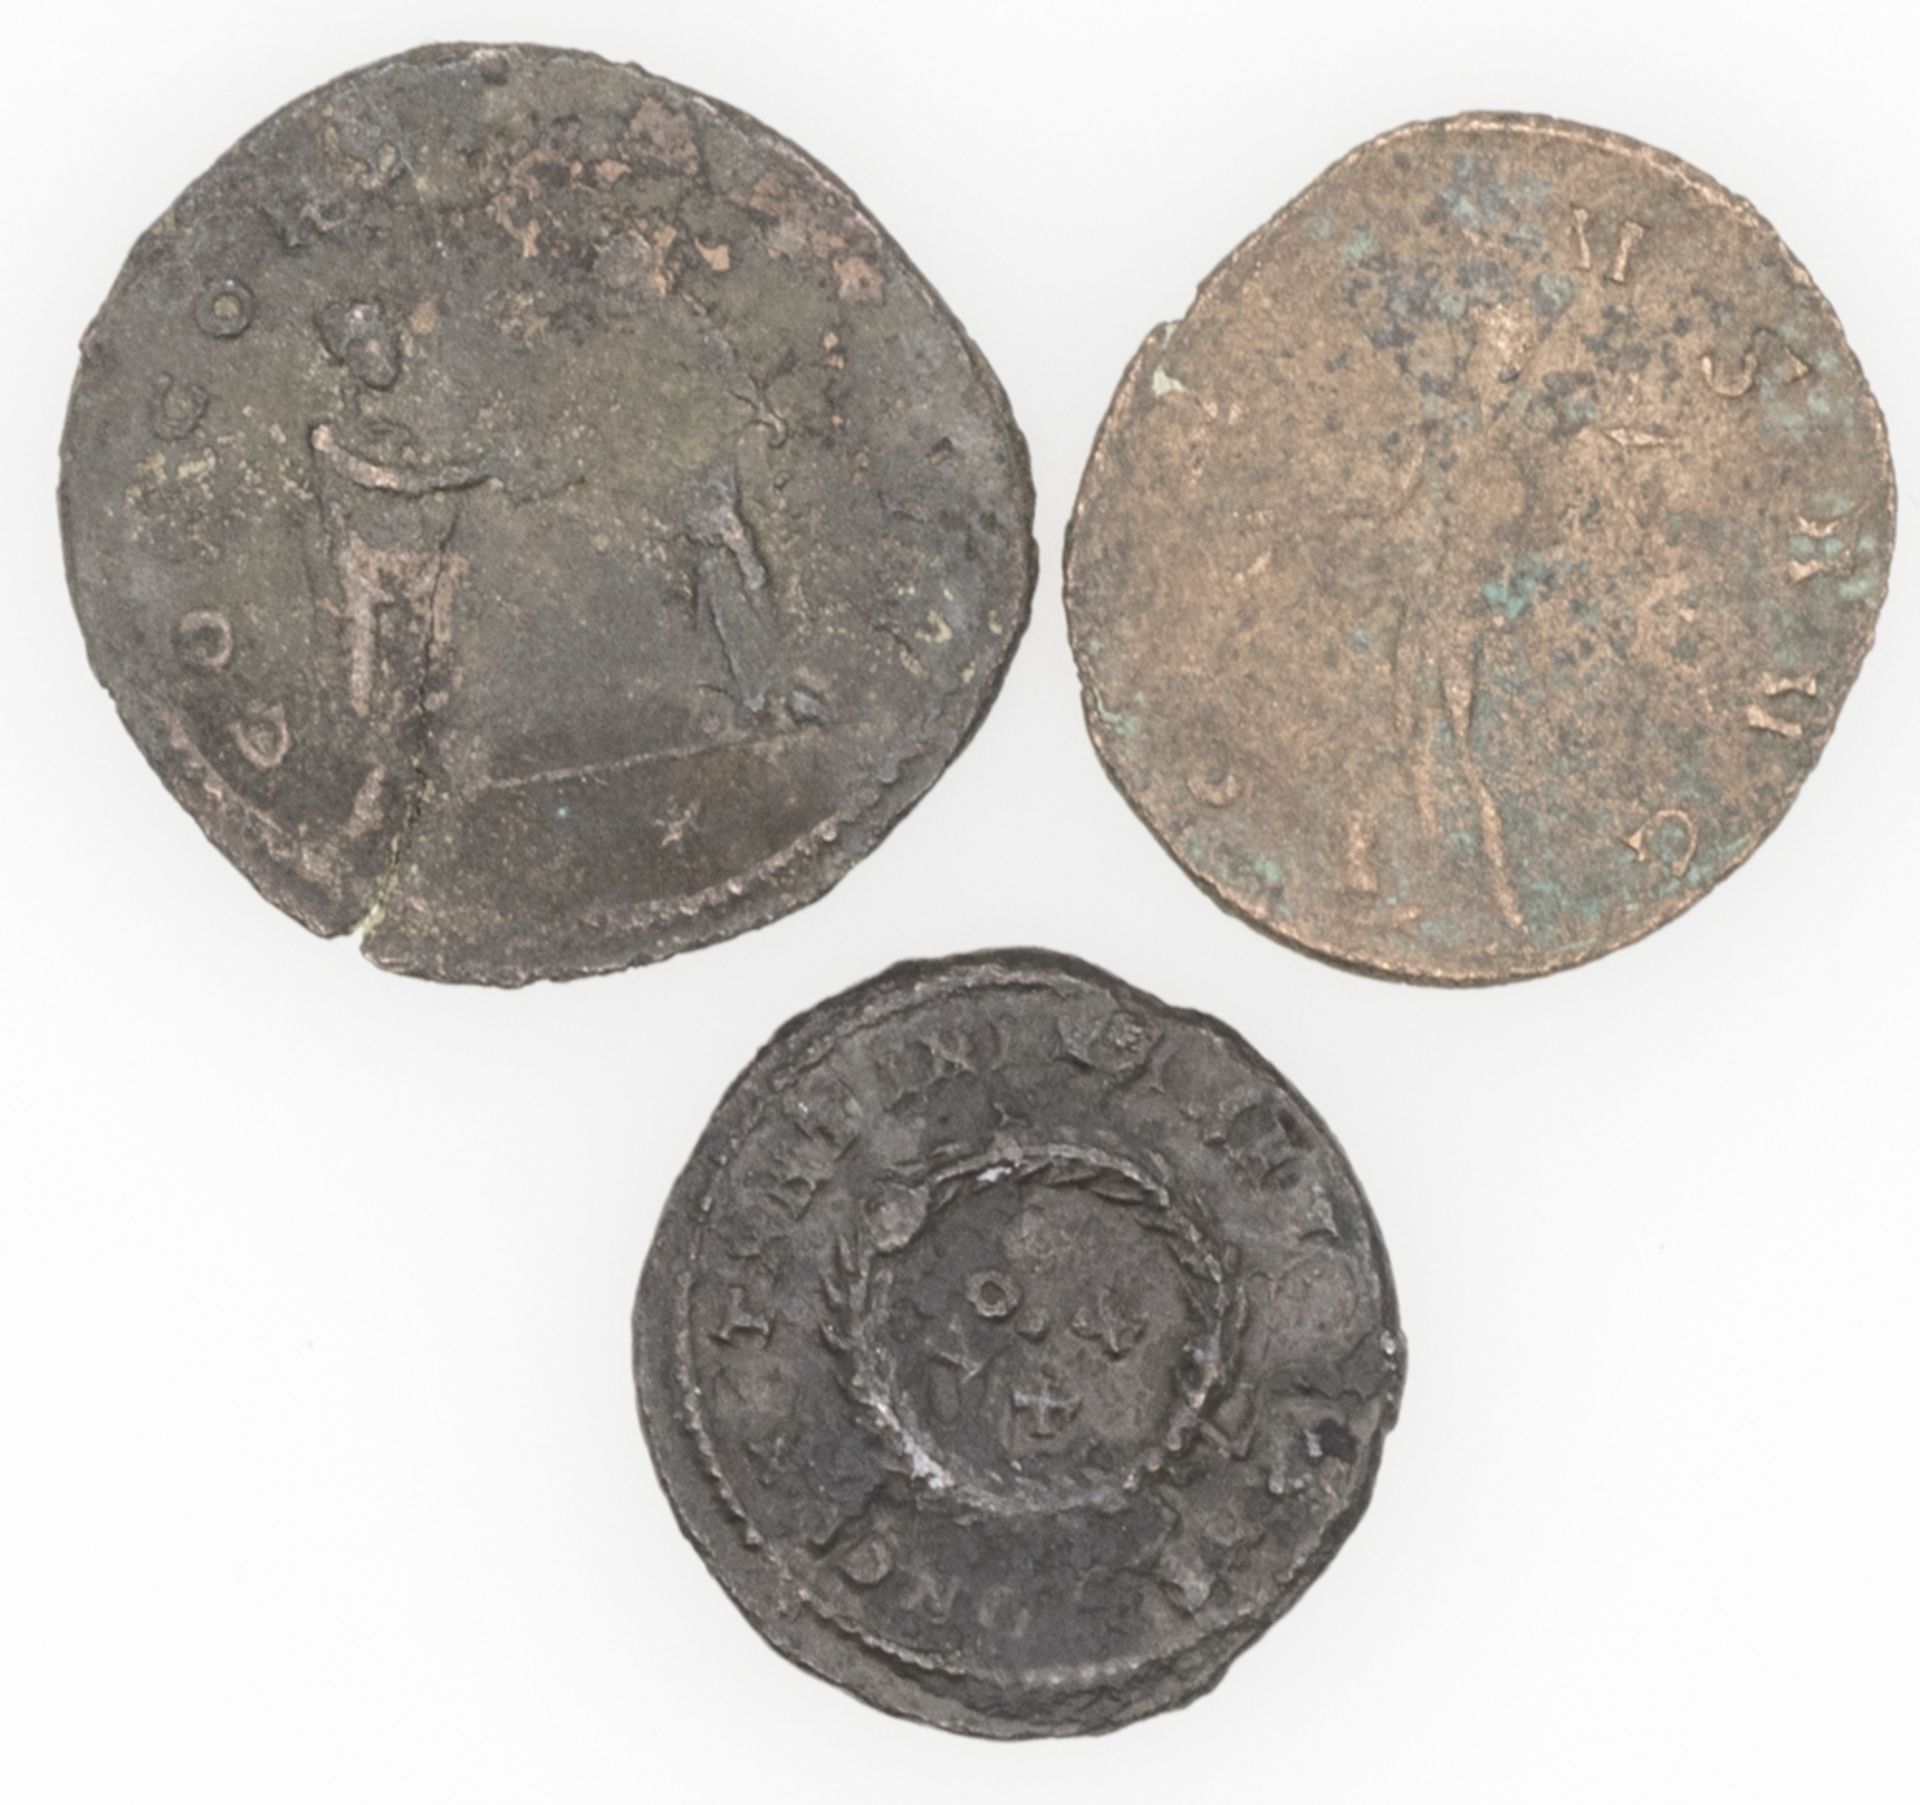 Lot Römische Münzen, Kaiserzeit. Bitte besichtigen. - Bild 2 aus 2